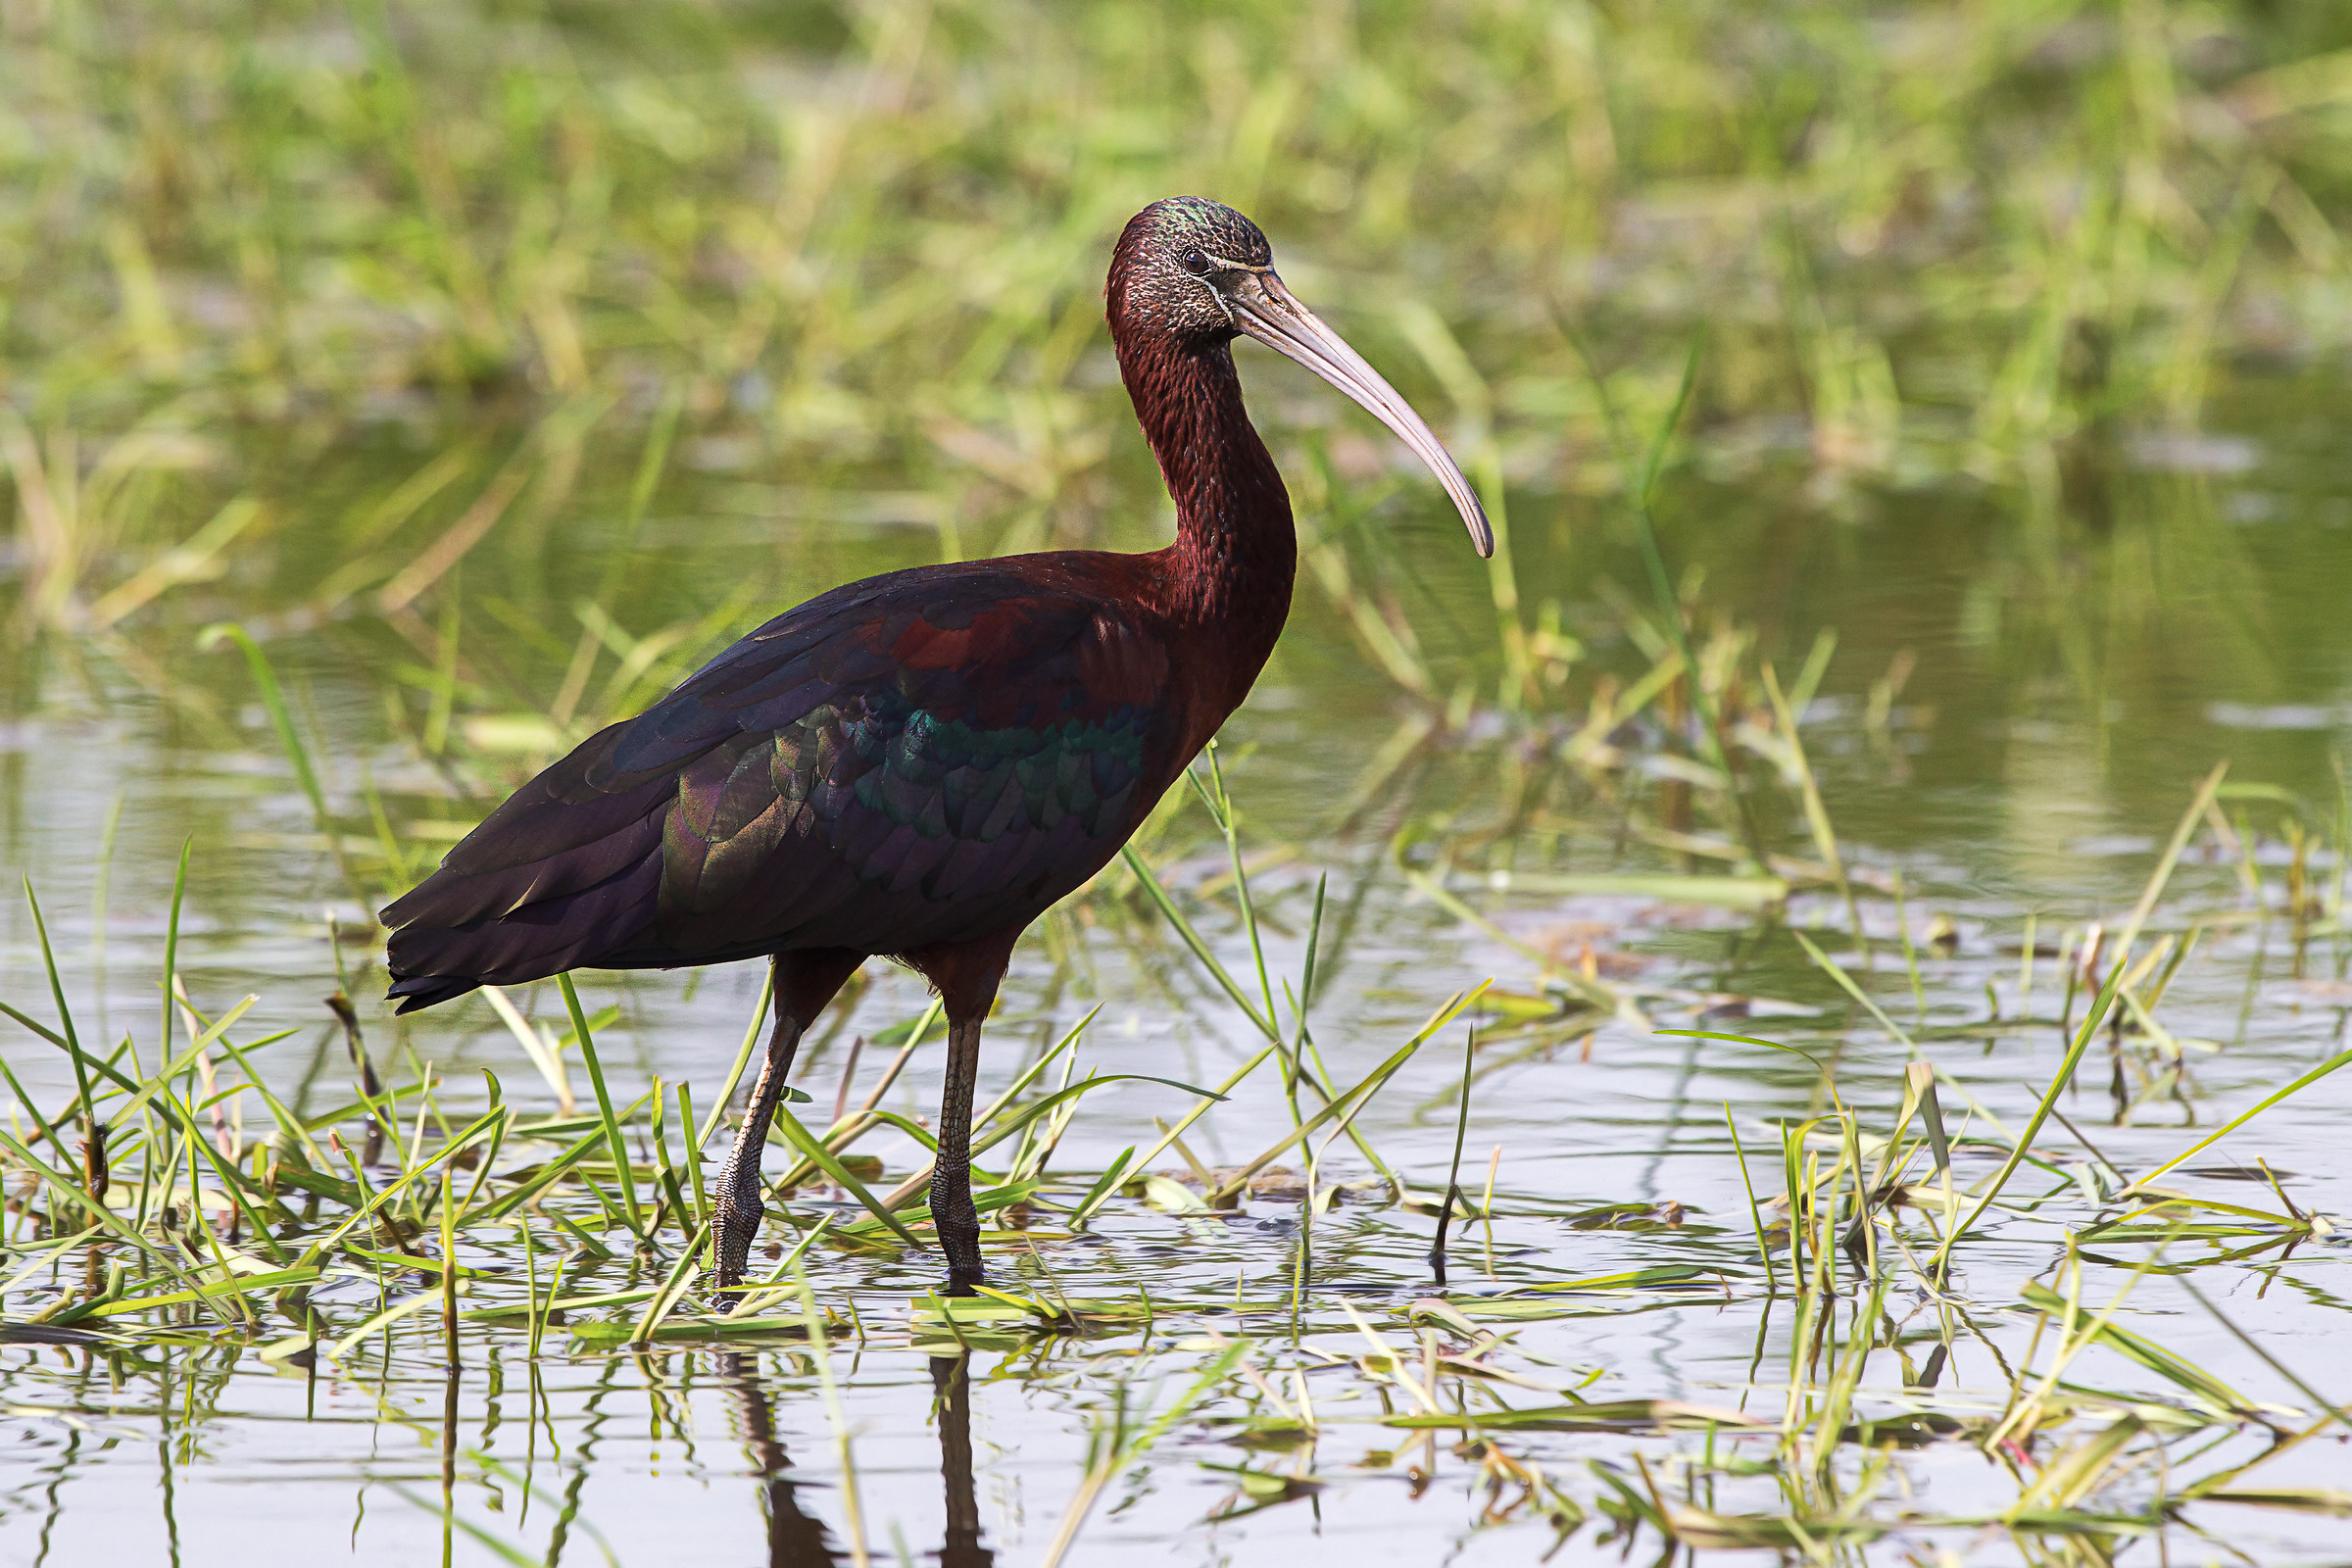 Black ibis attention...